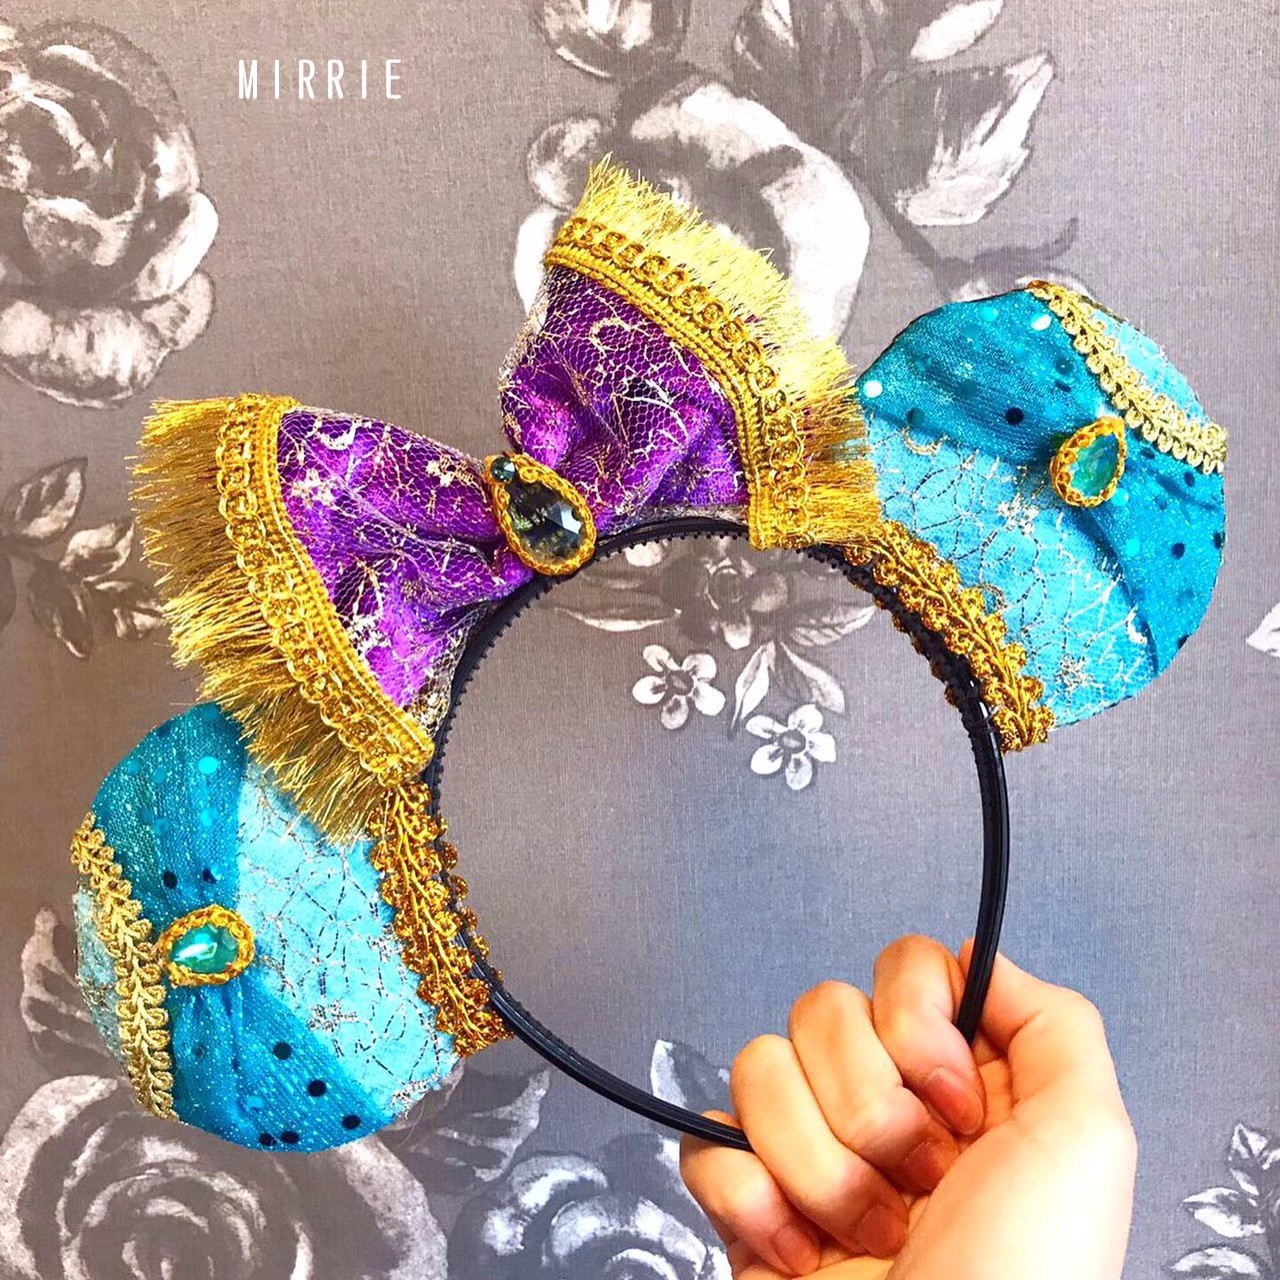 Disney Ears Mirrie